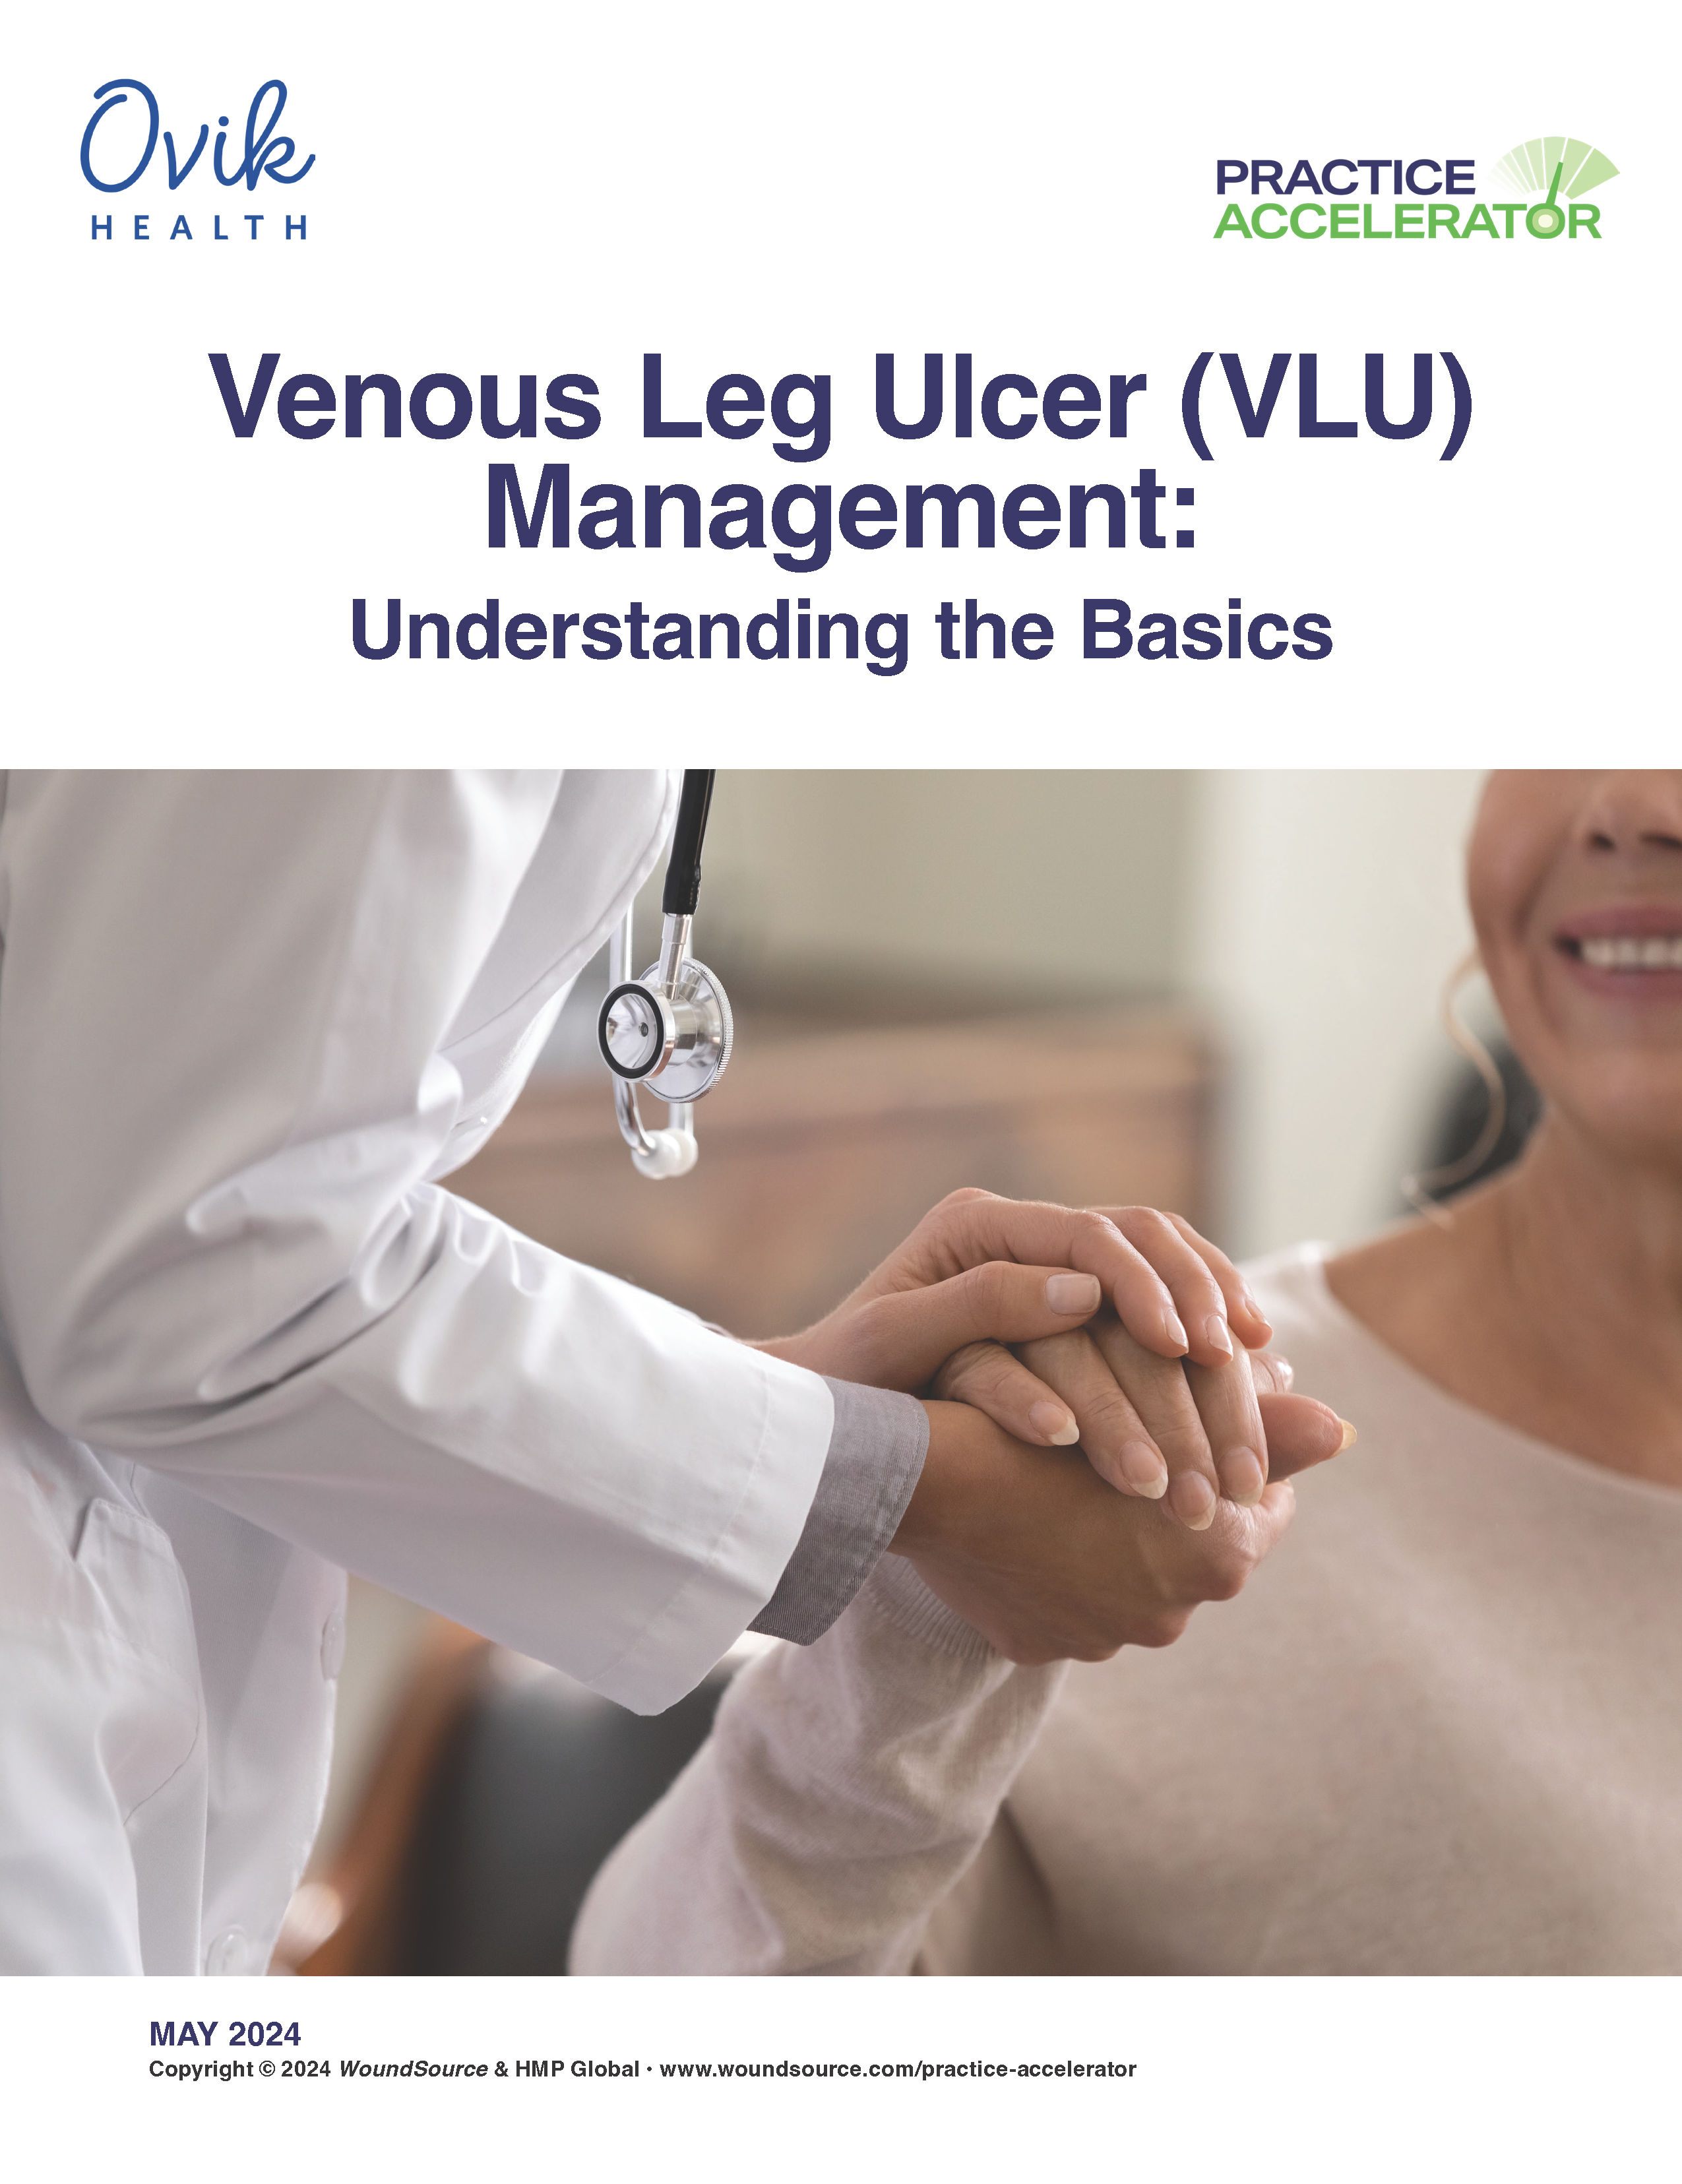 Venous Leg Ulcer (VLU) Management: Understanding the Basics